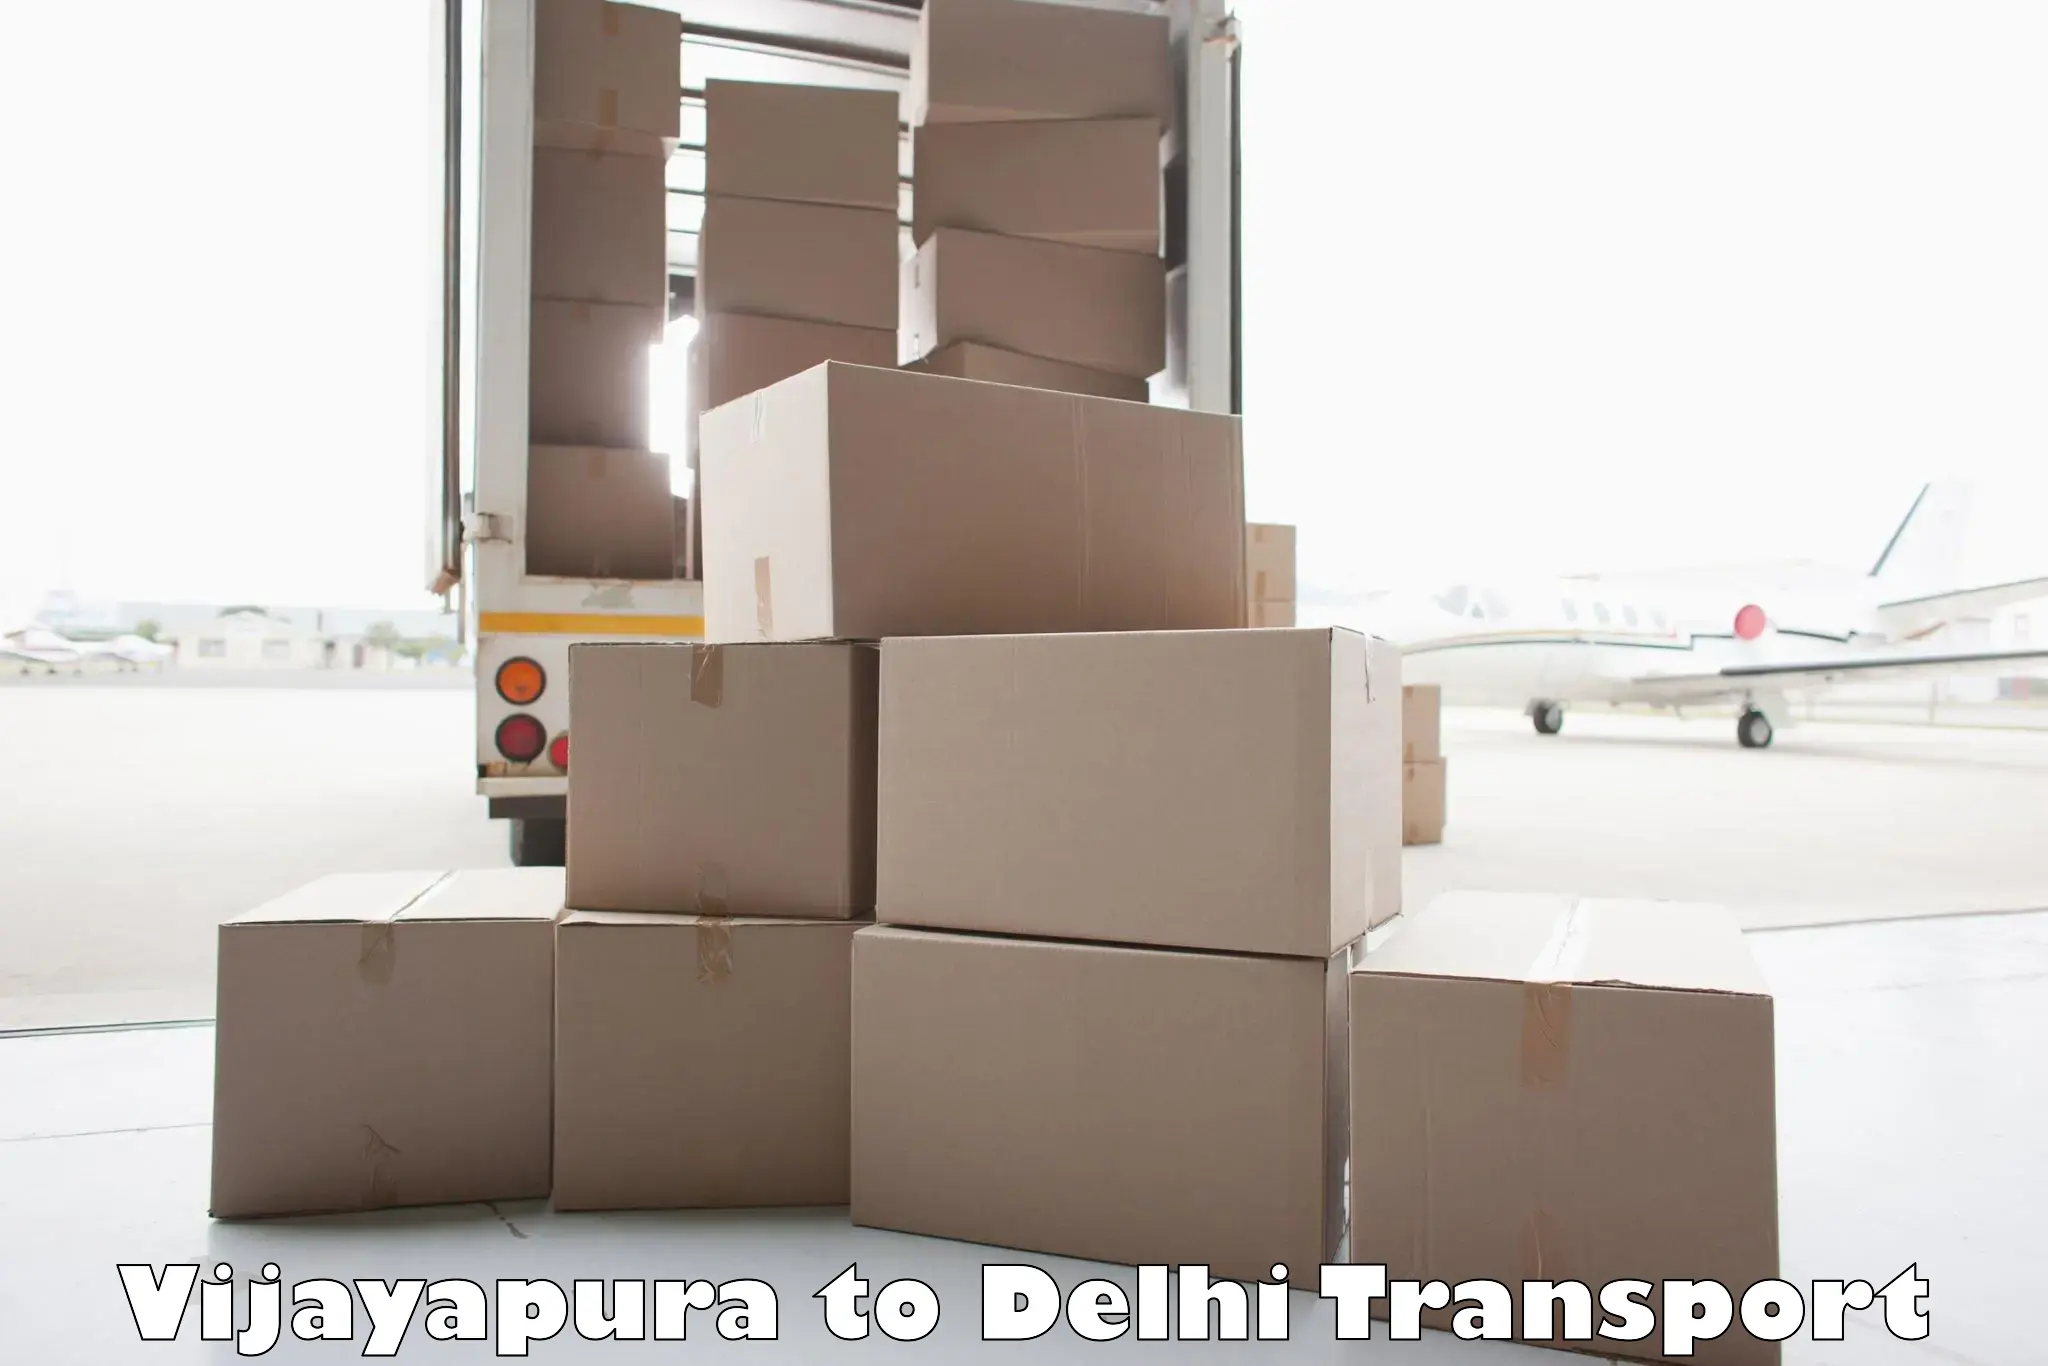 Nearby transport service Vijayapura to Delhi